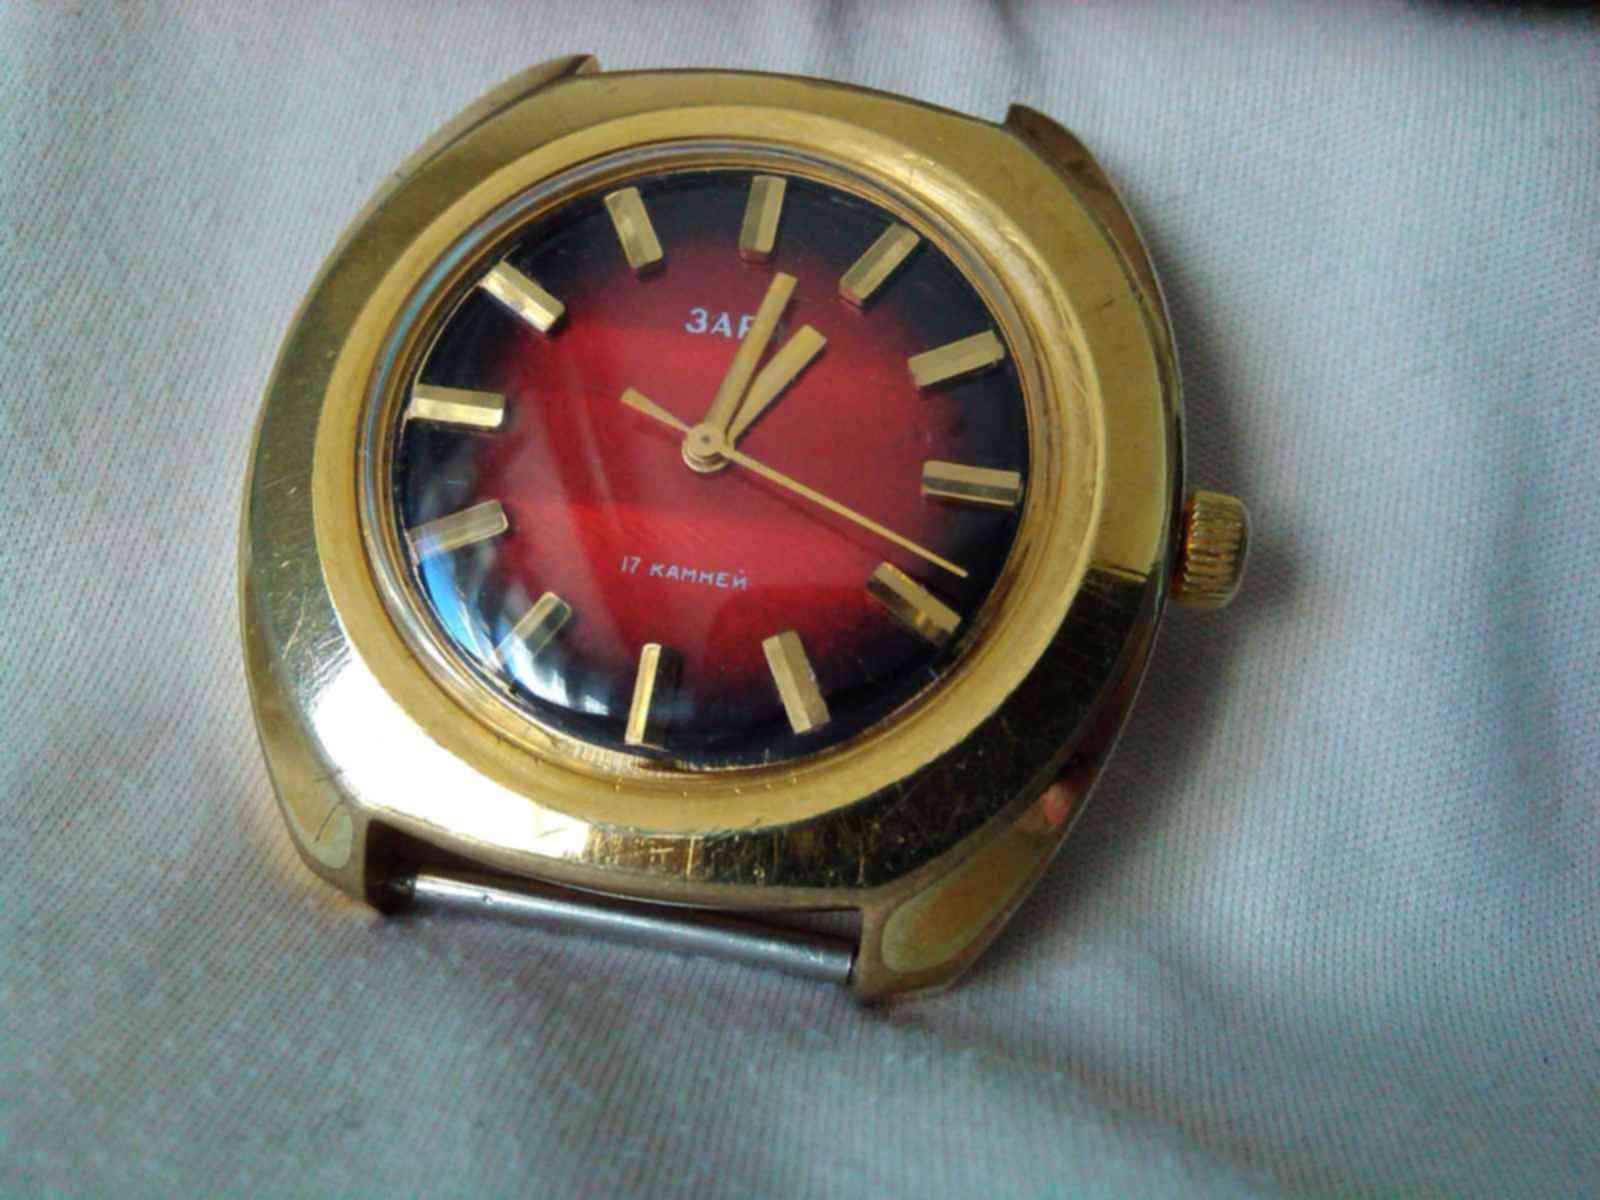 Советские часы Заря 17 камней красный циферблат